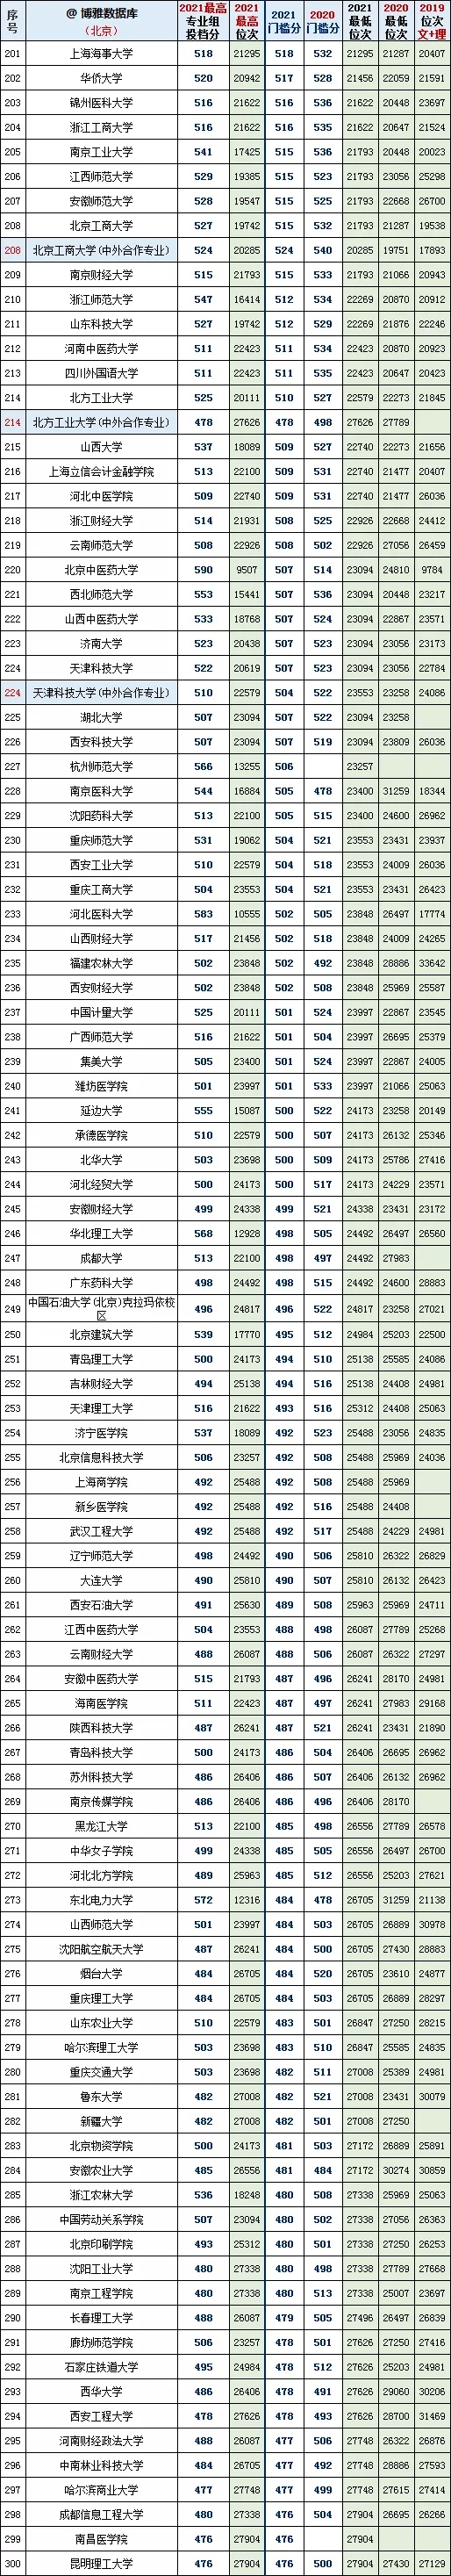 北京本科批最低投档线2020年~2021年对比(图4)